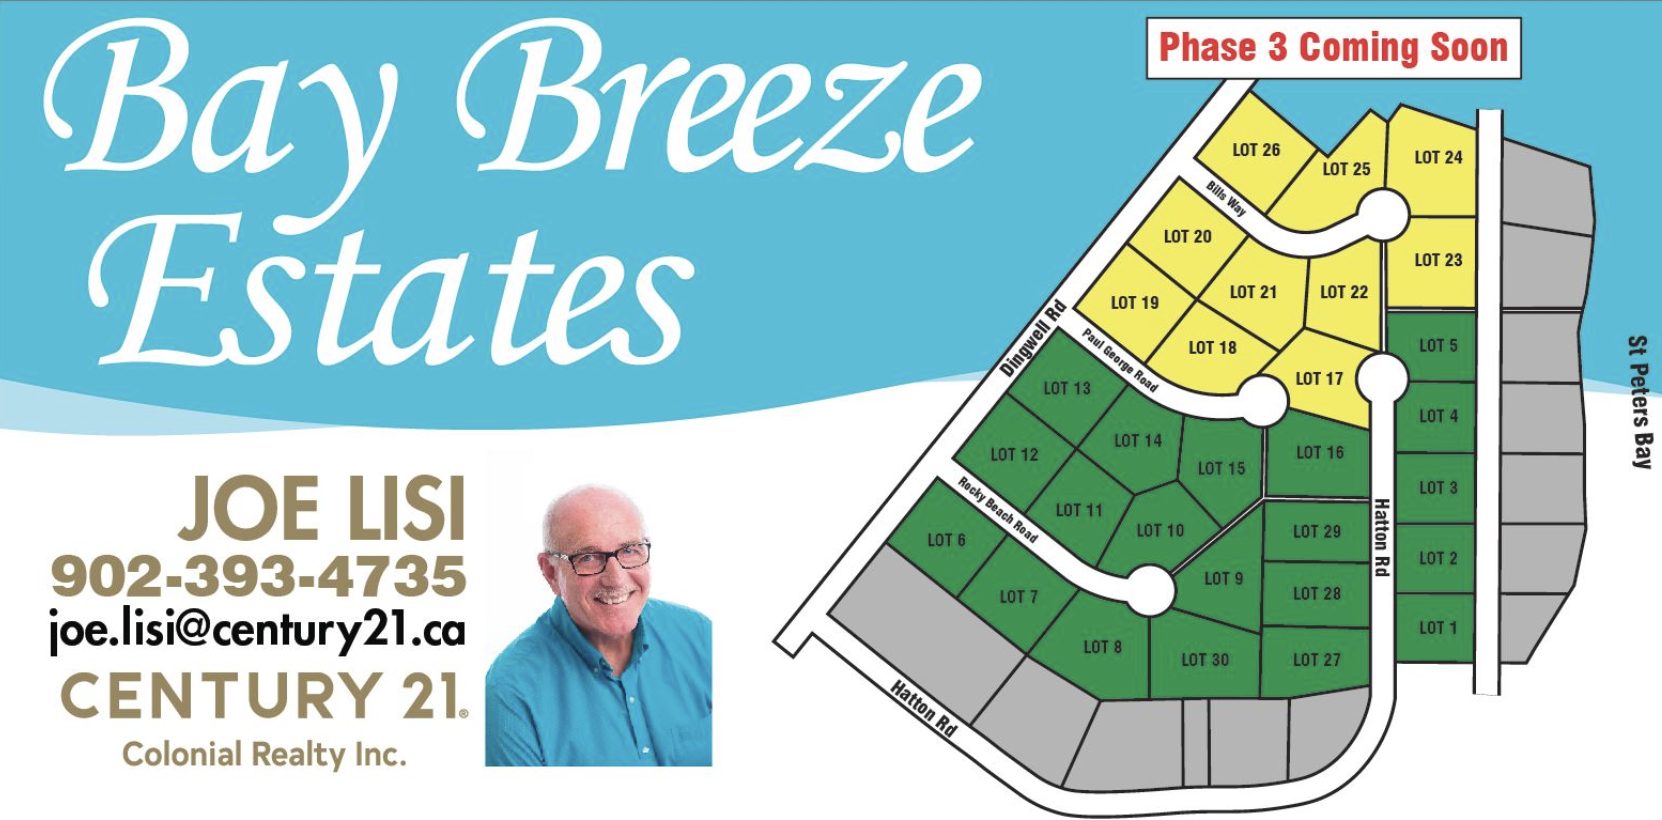 Bay Breeze Estate - Lots for Sale in PEI